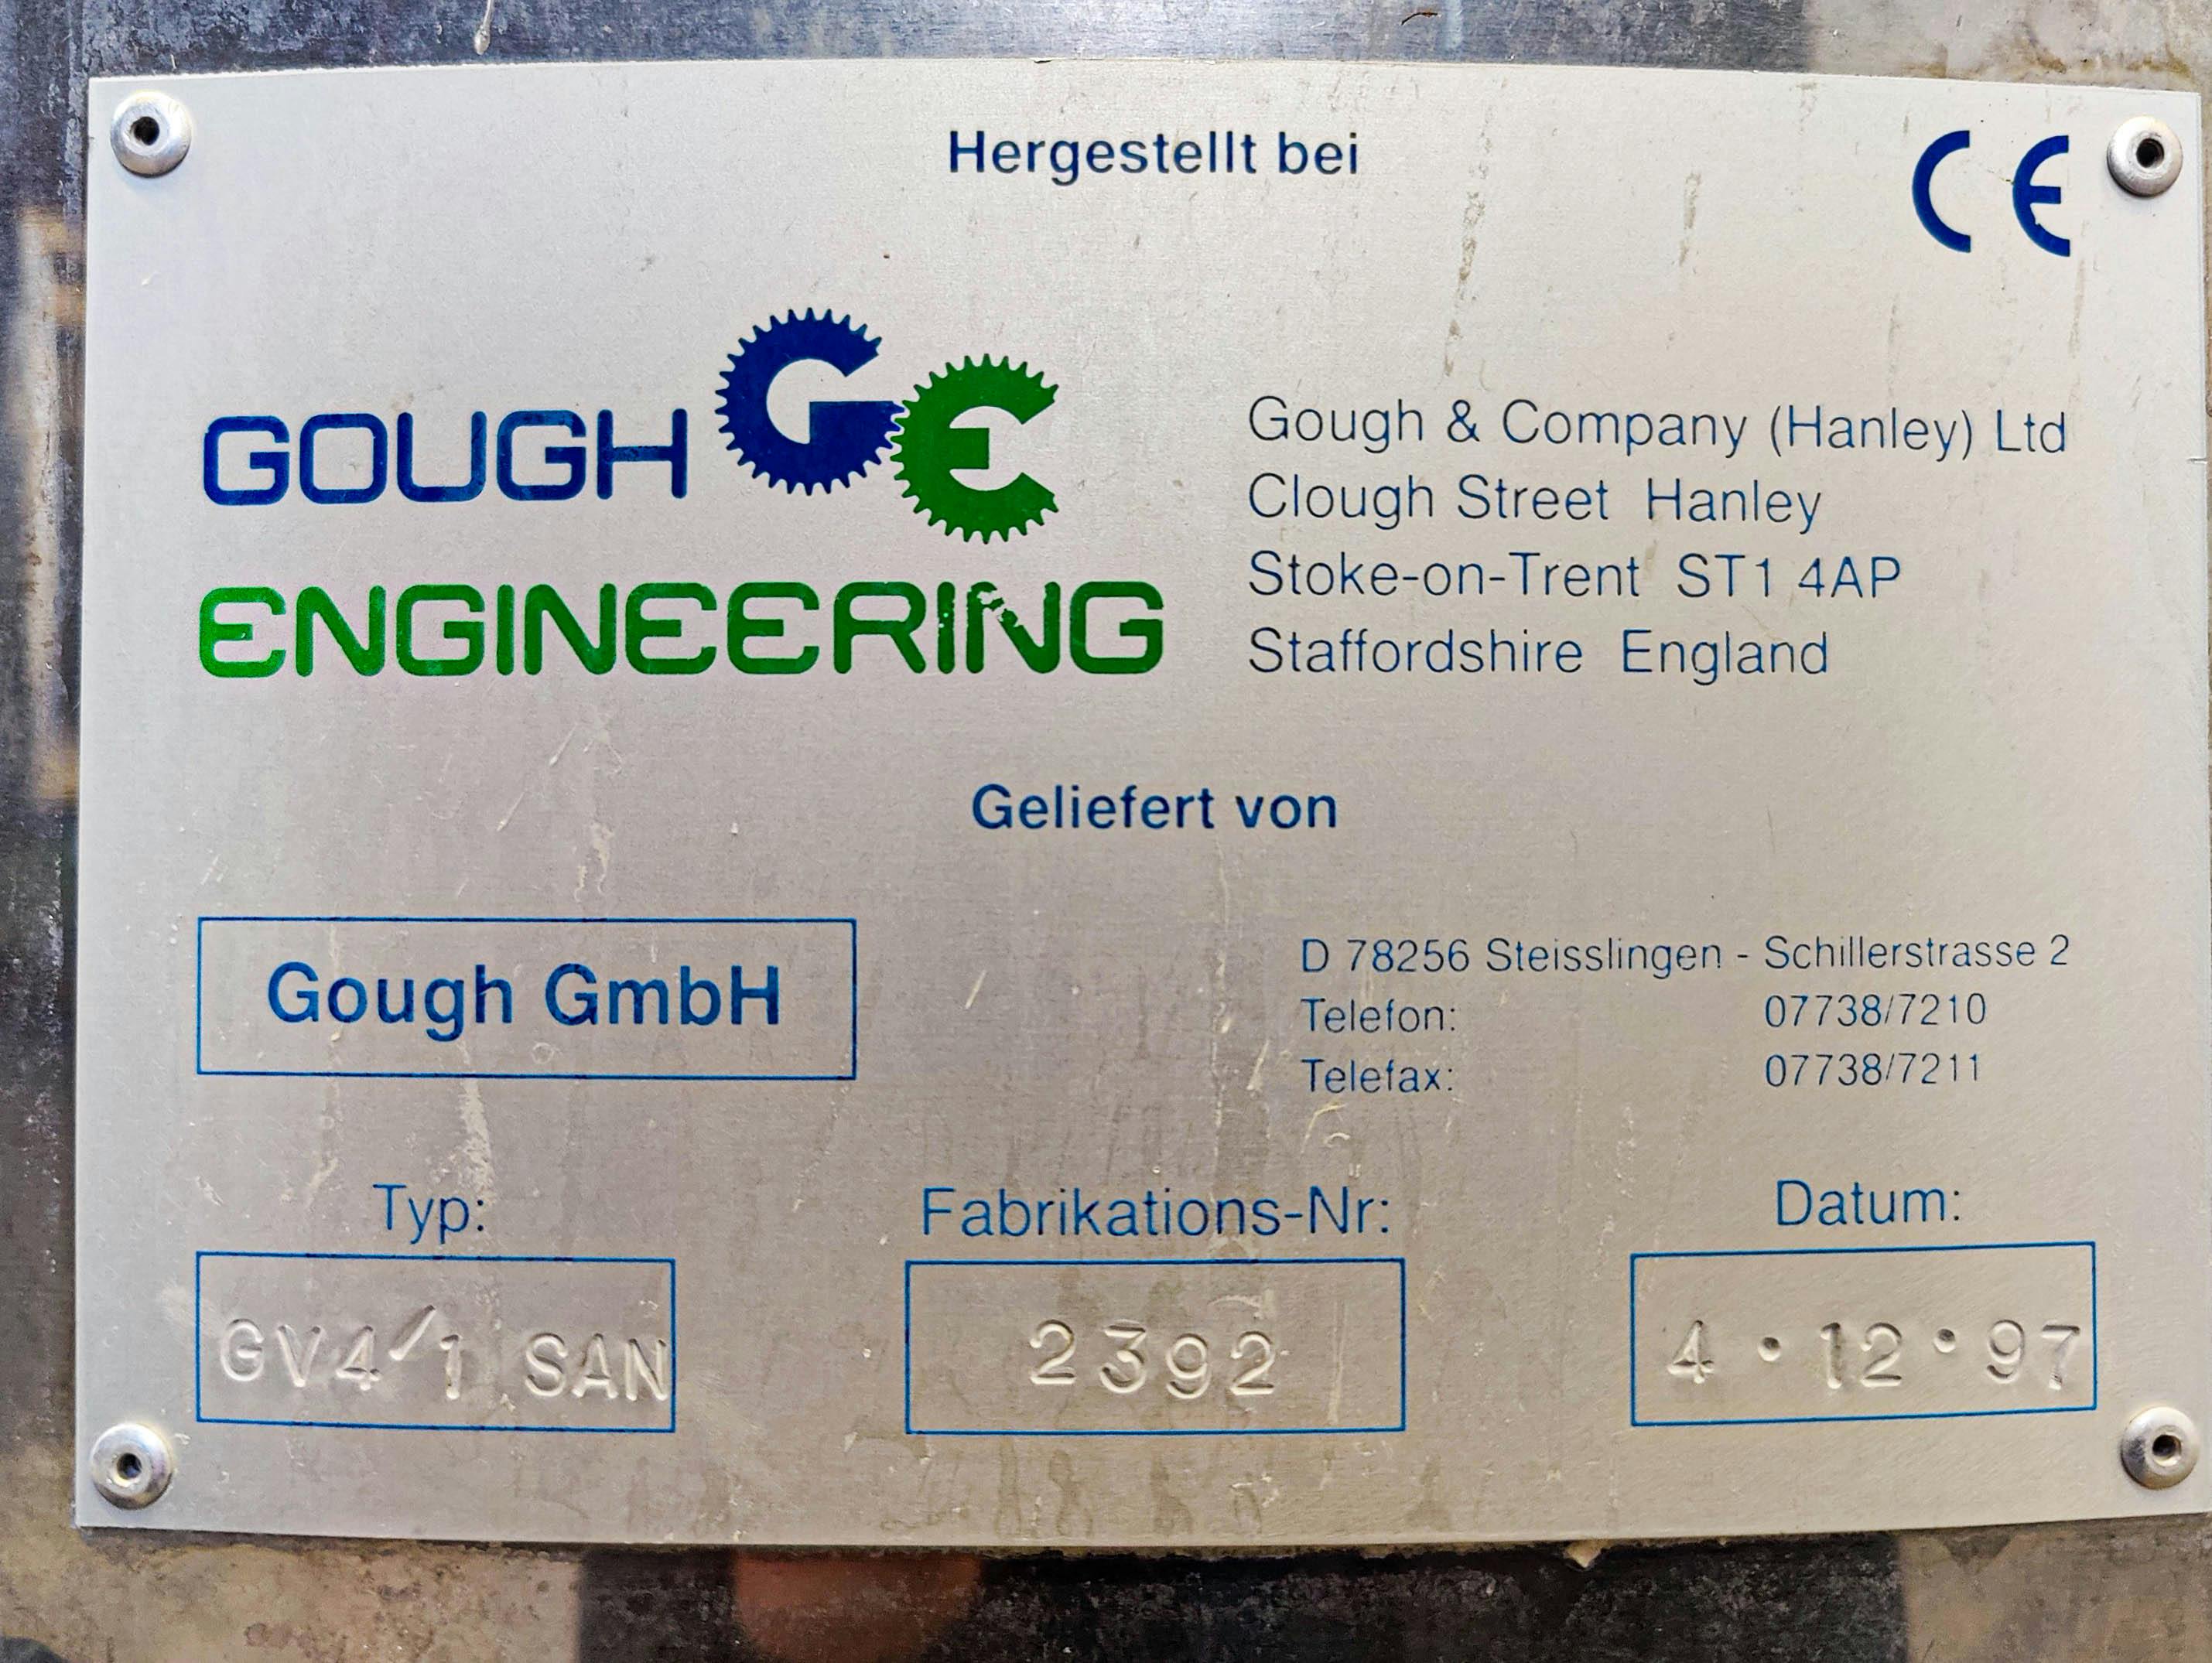 Gough & Co GV4/1 SAN - Rüttelsieb - image 9